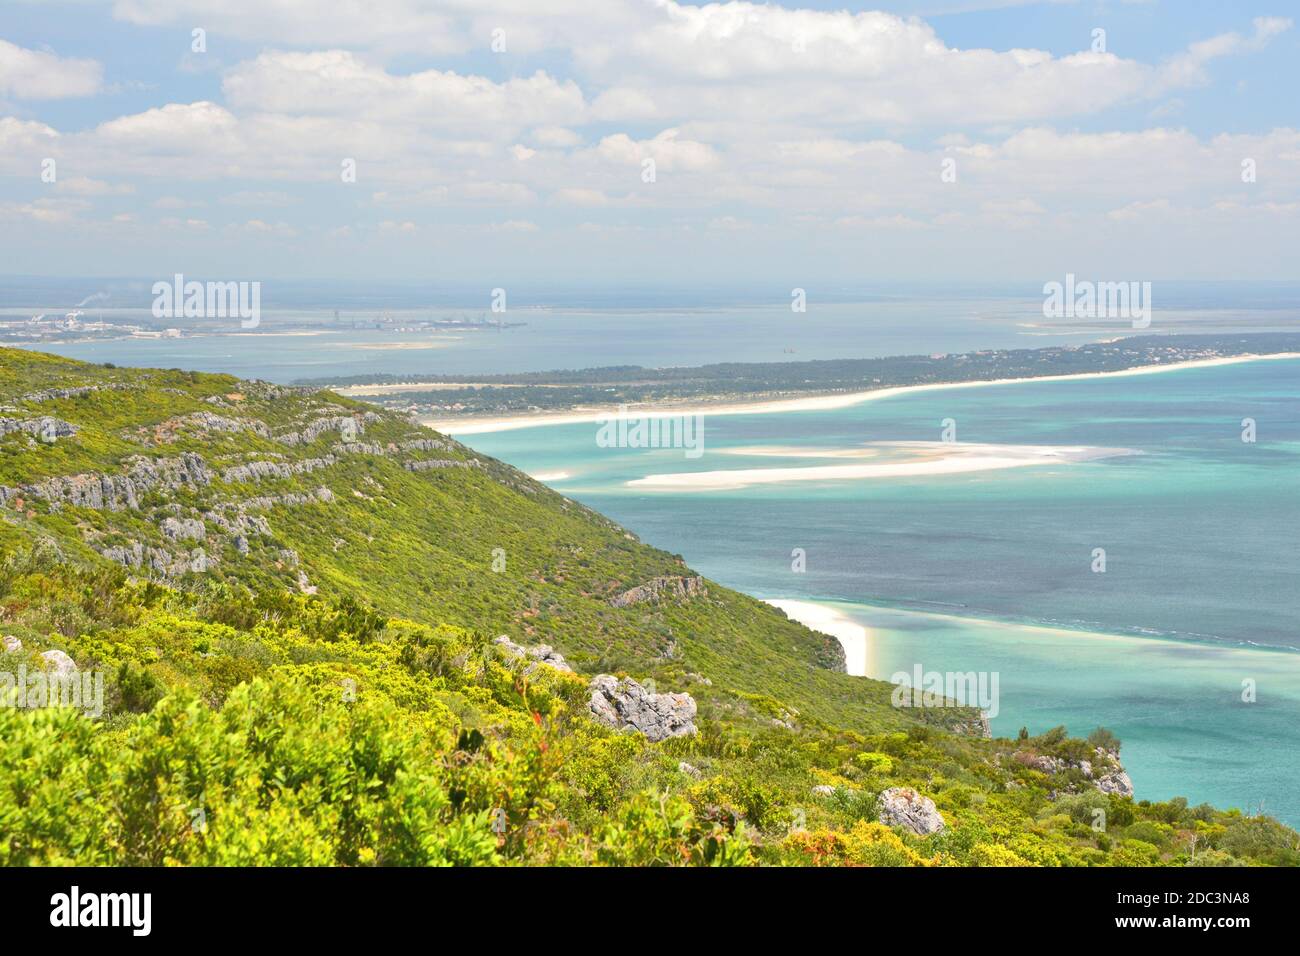 Coast view of Atlantic Ocean in Portugal, Serra da Arrabida. Stock Photo